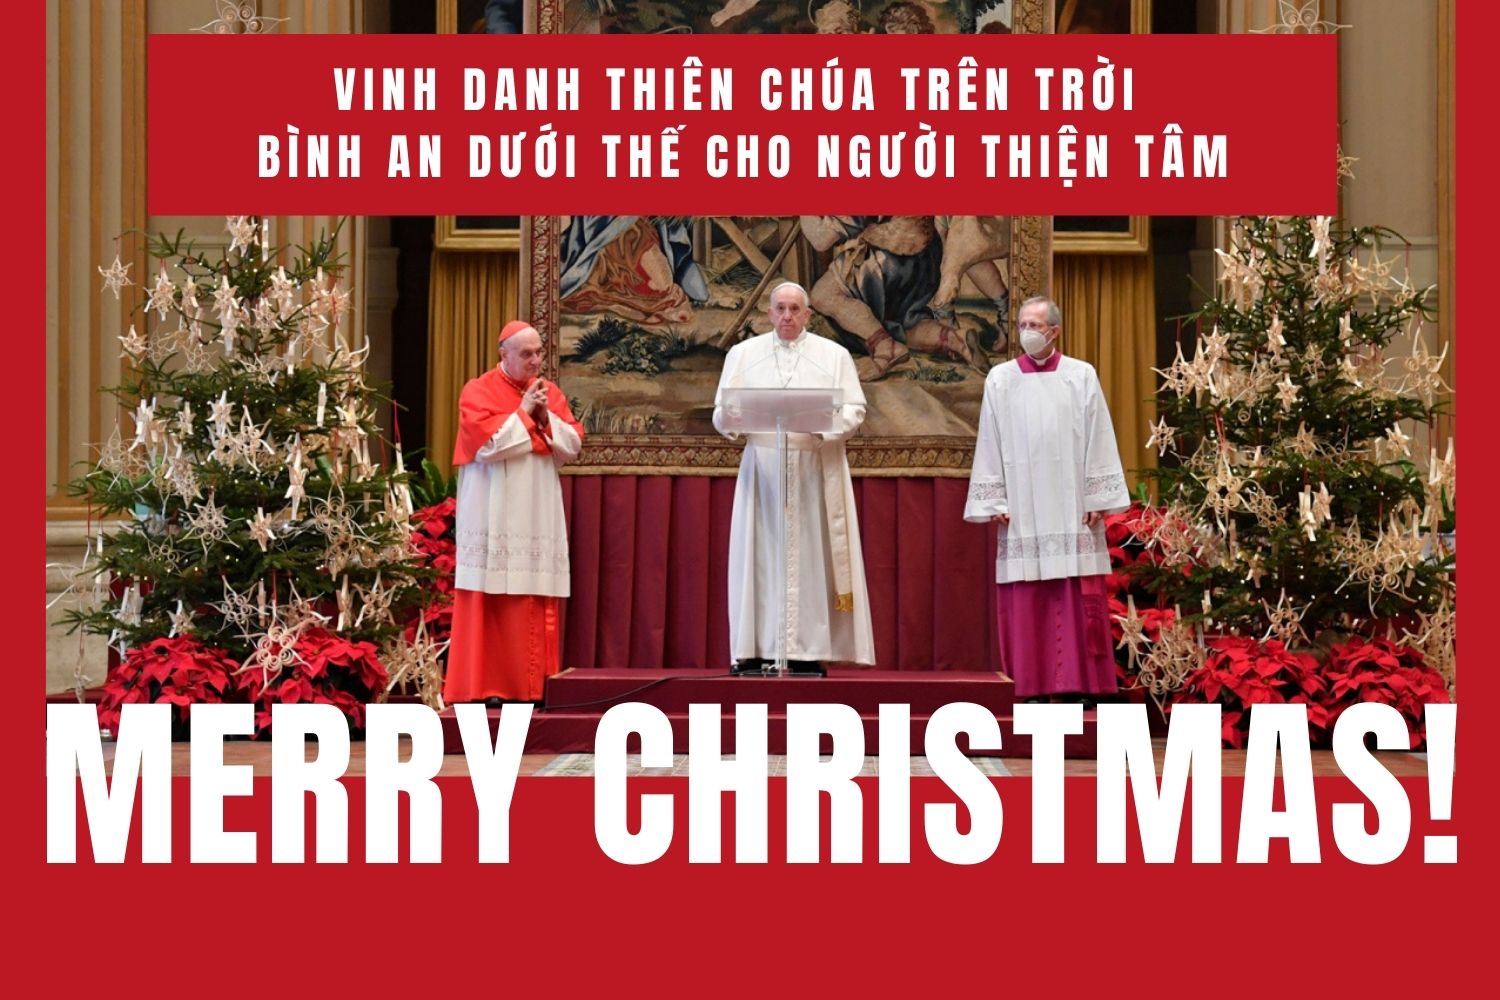 Lời chúc Giáng sinh cho người công giáo hay, ý nghĩa nhất năm 2021 - Ảnh 2.